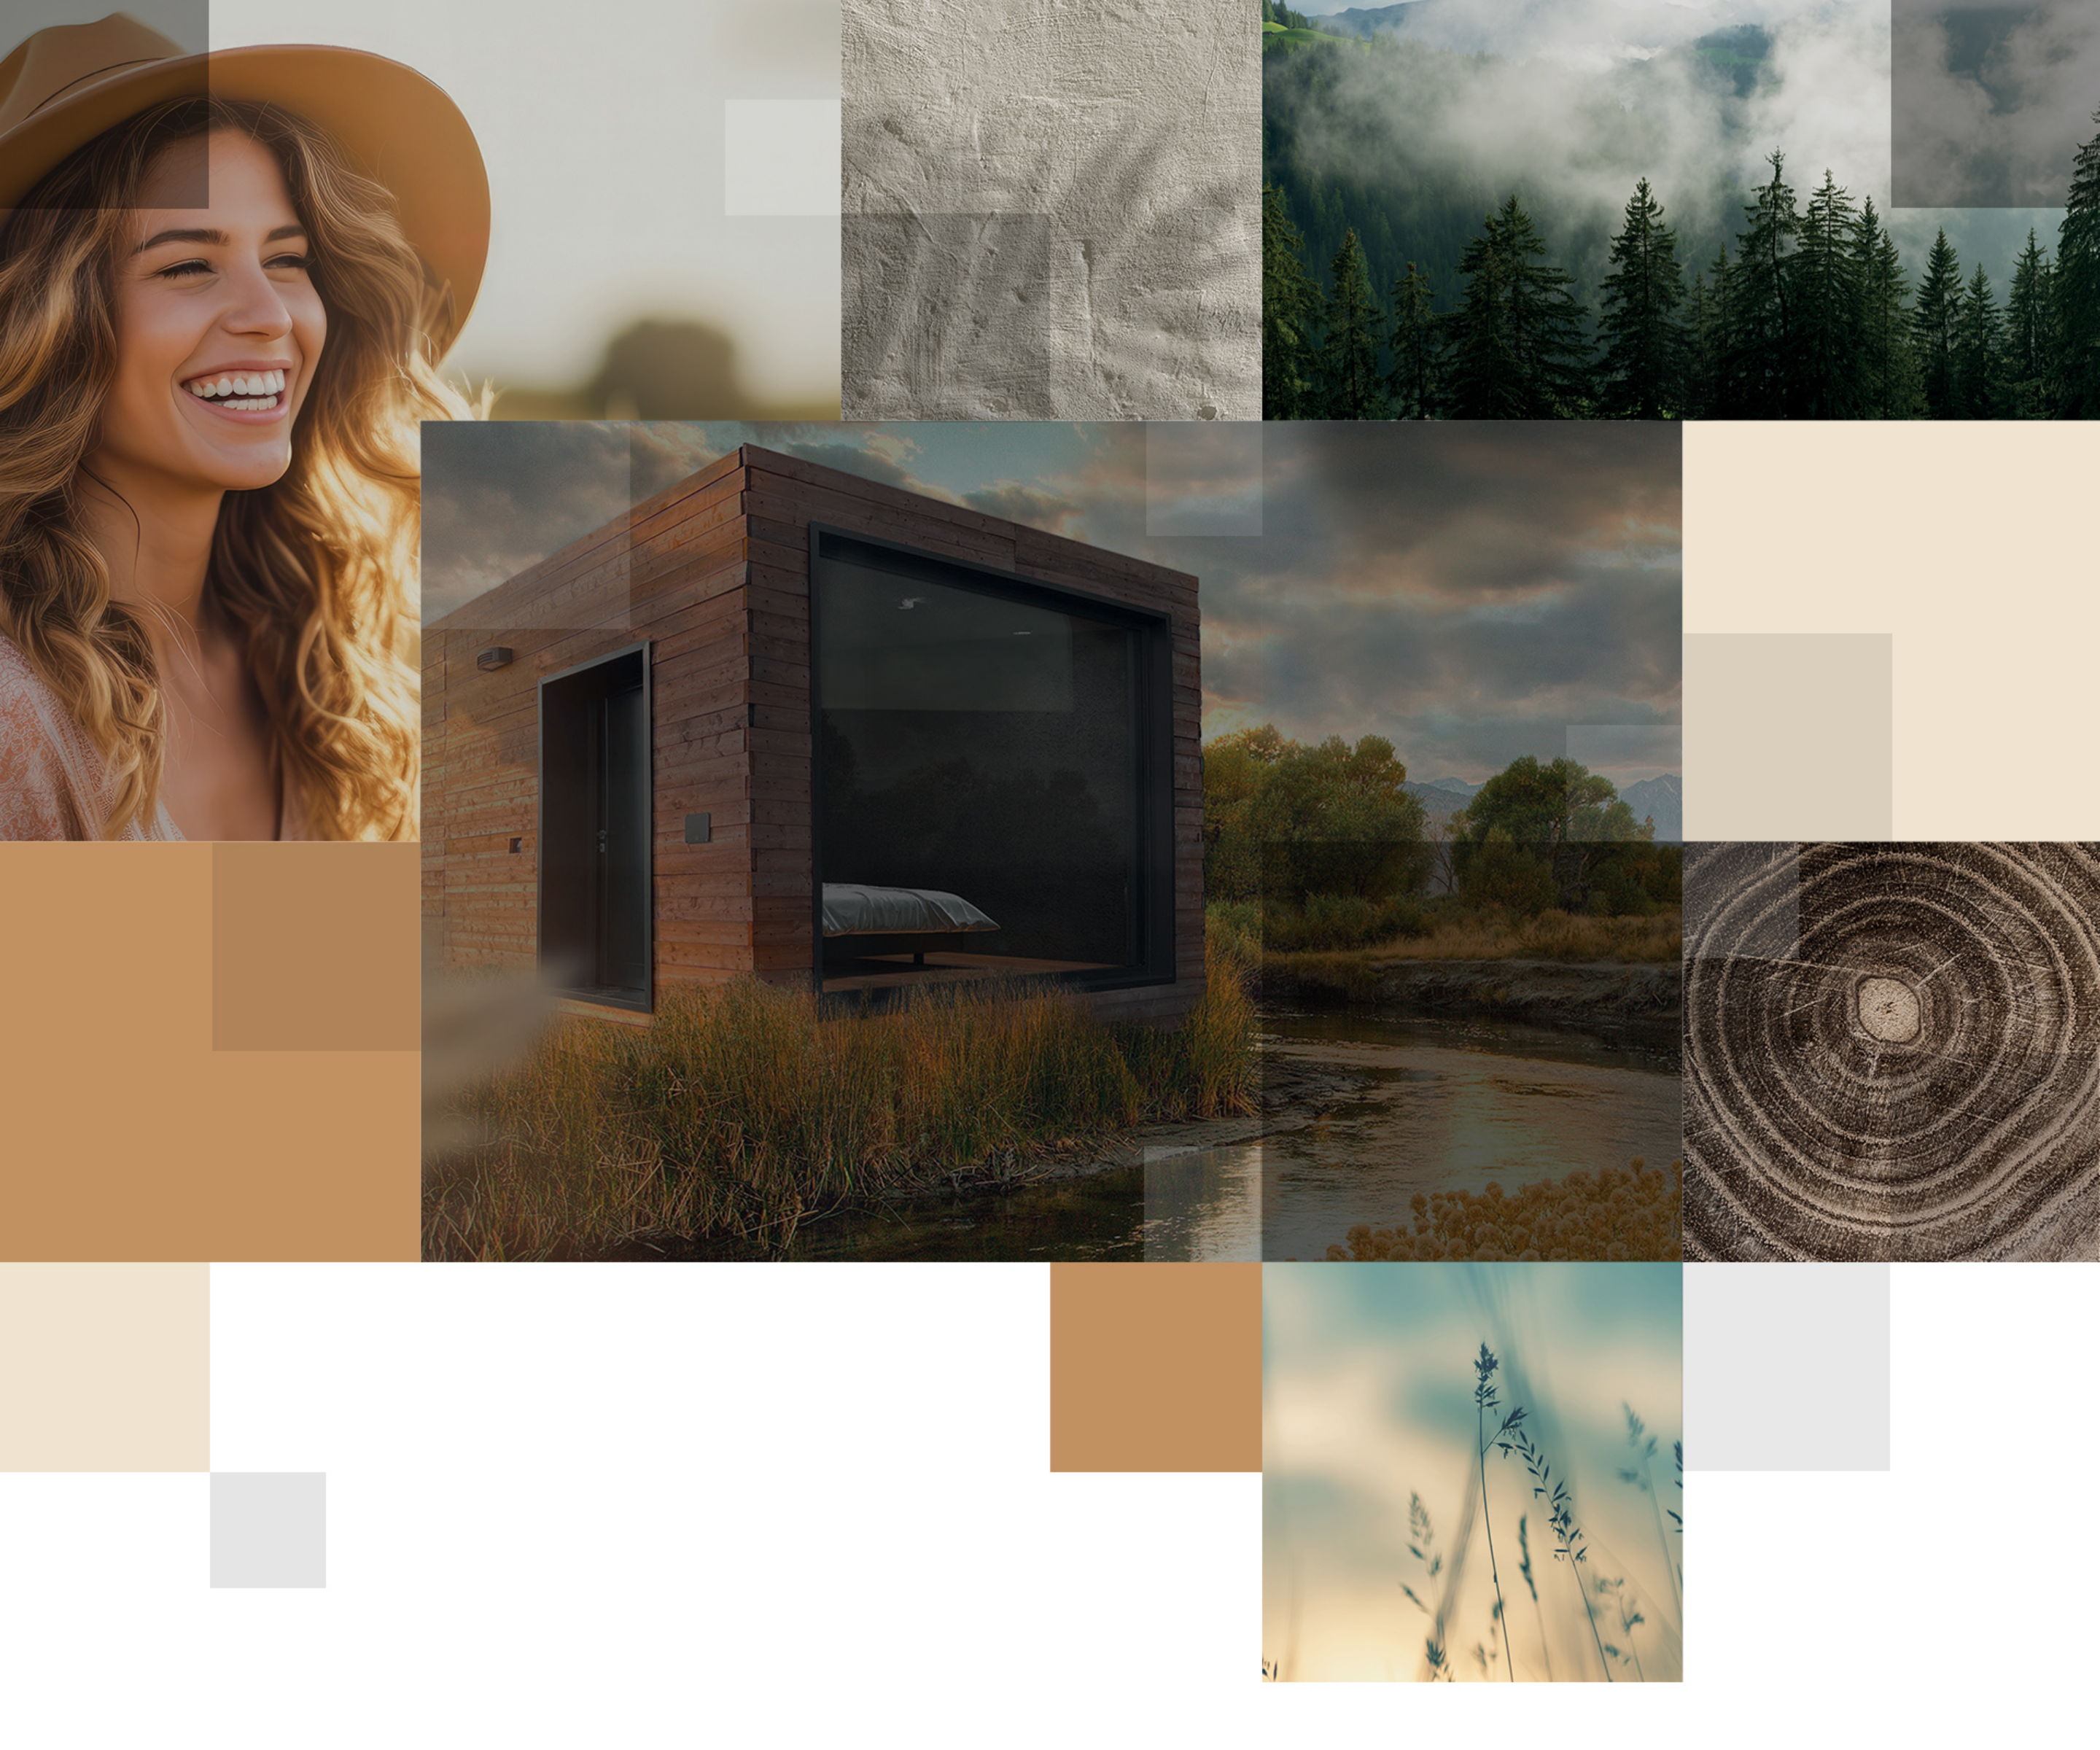 Serie di immagini evocative per l'azienda: a sinistra una donna che sorride, in centro una realizzazione, in alto a destra un bosco e in basso delle spighe e del legno.